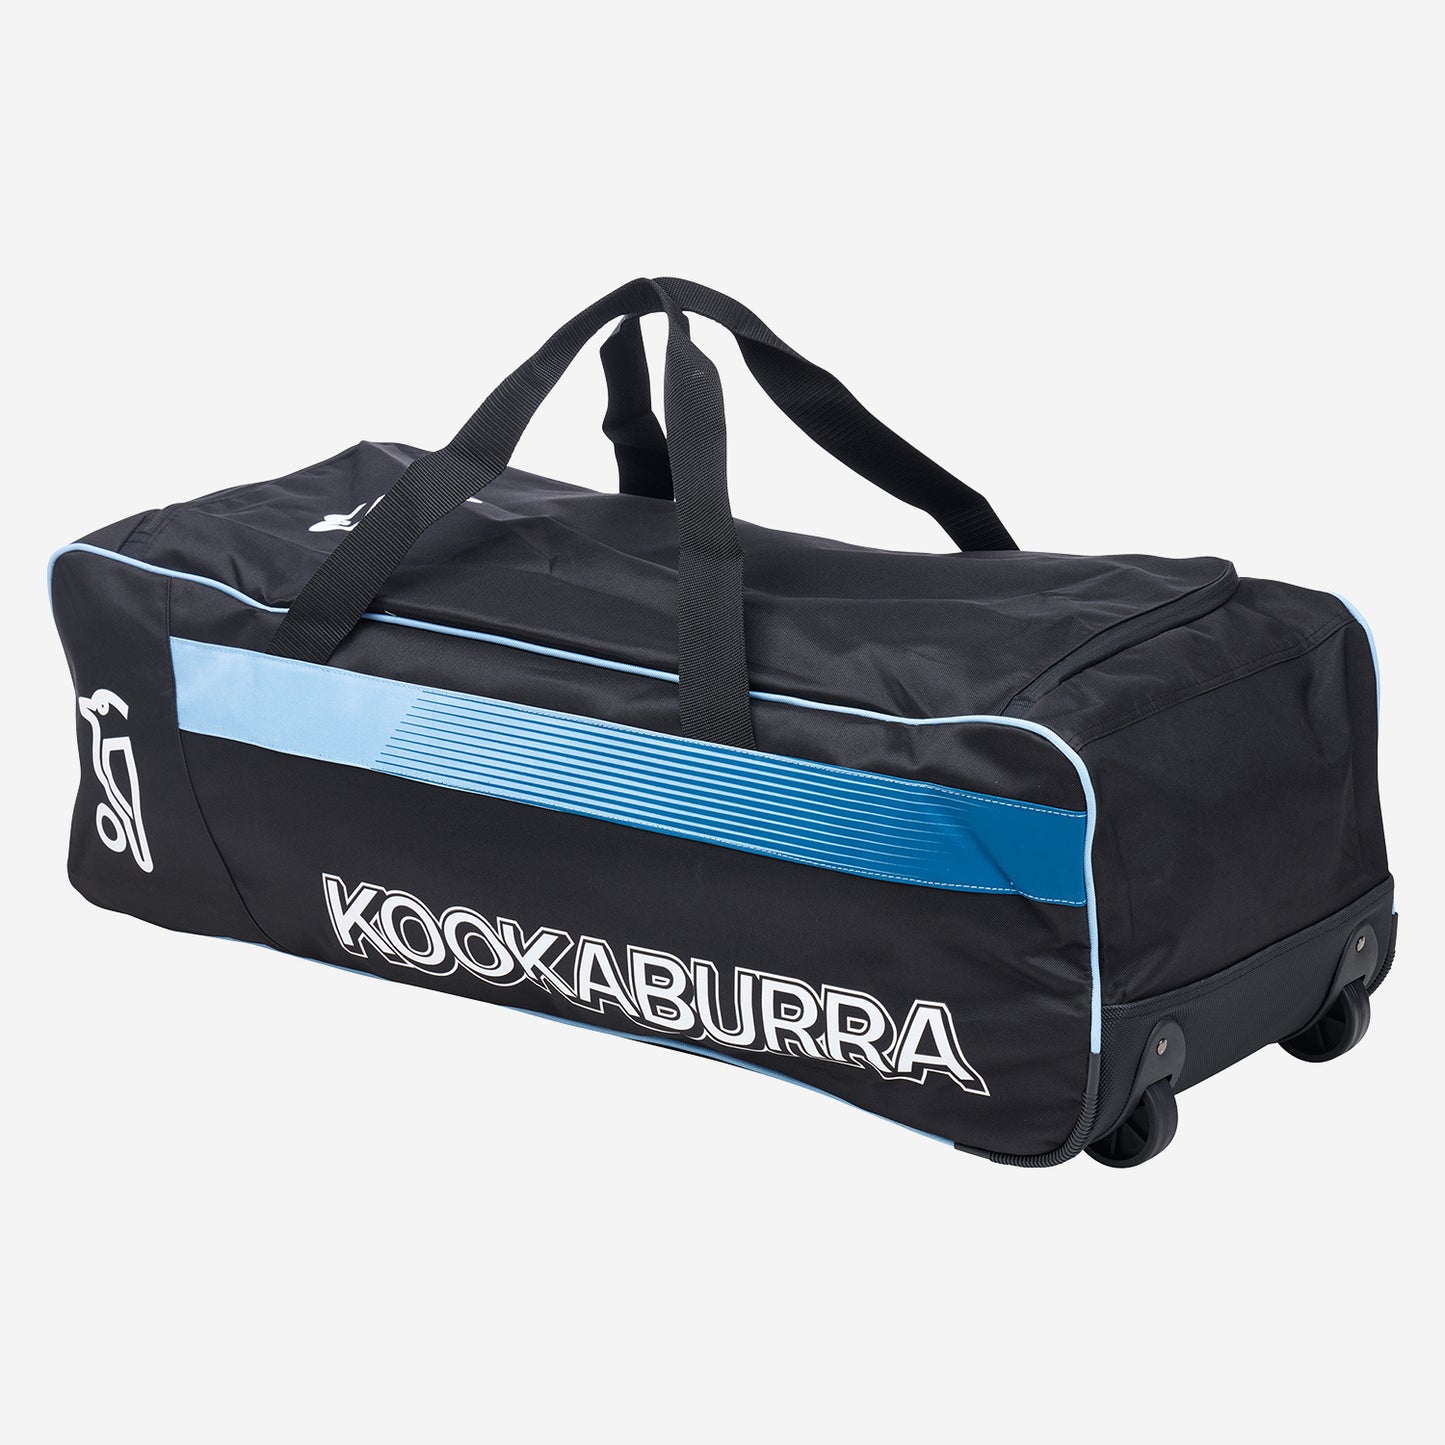 Kookaburra Pro 4.0 Wheelie - Black / Blue